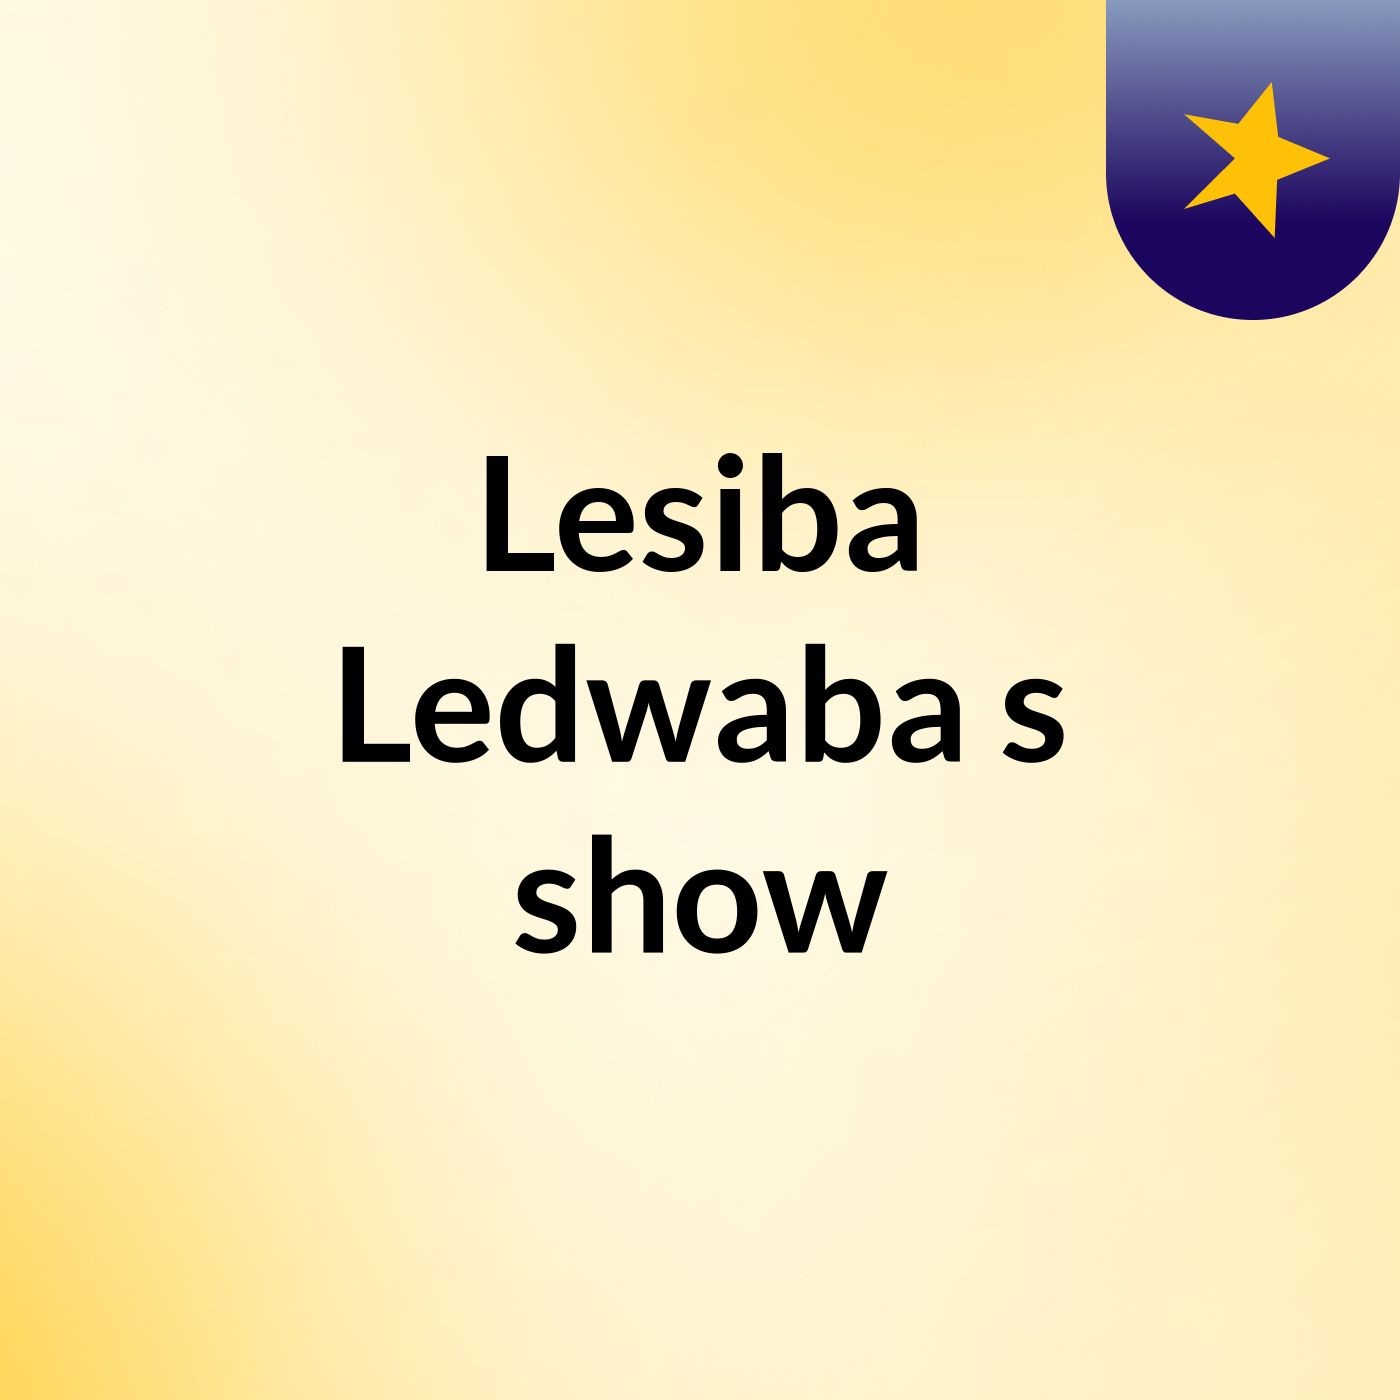 Episode 4 - Lesiba Ledwaba's show